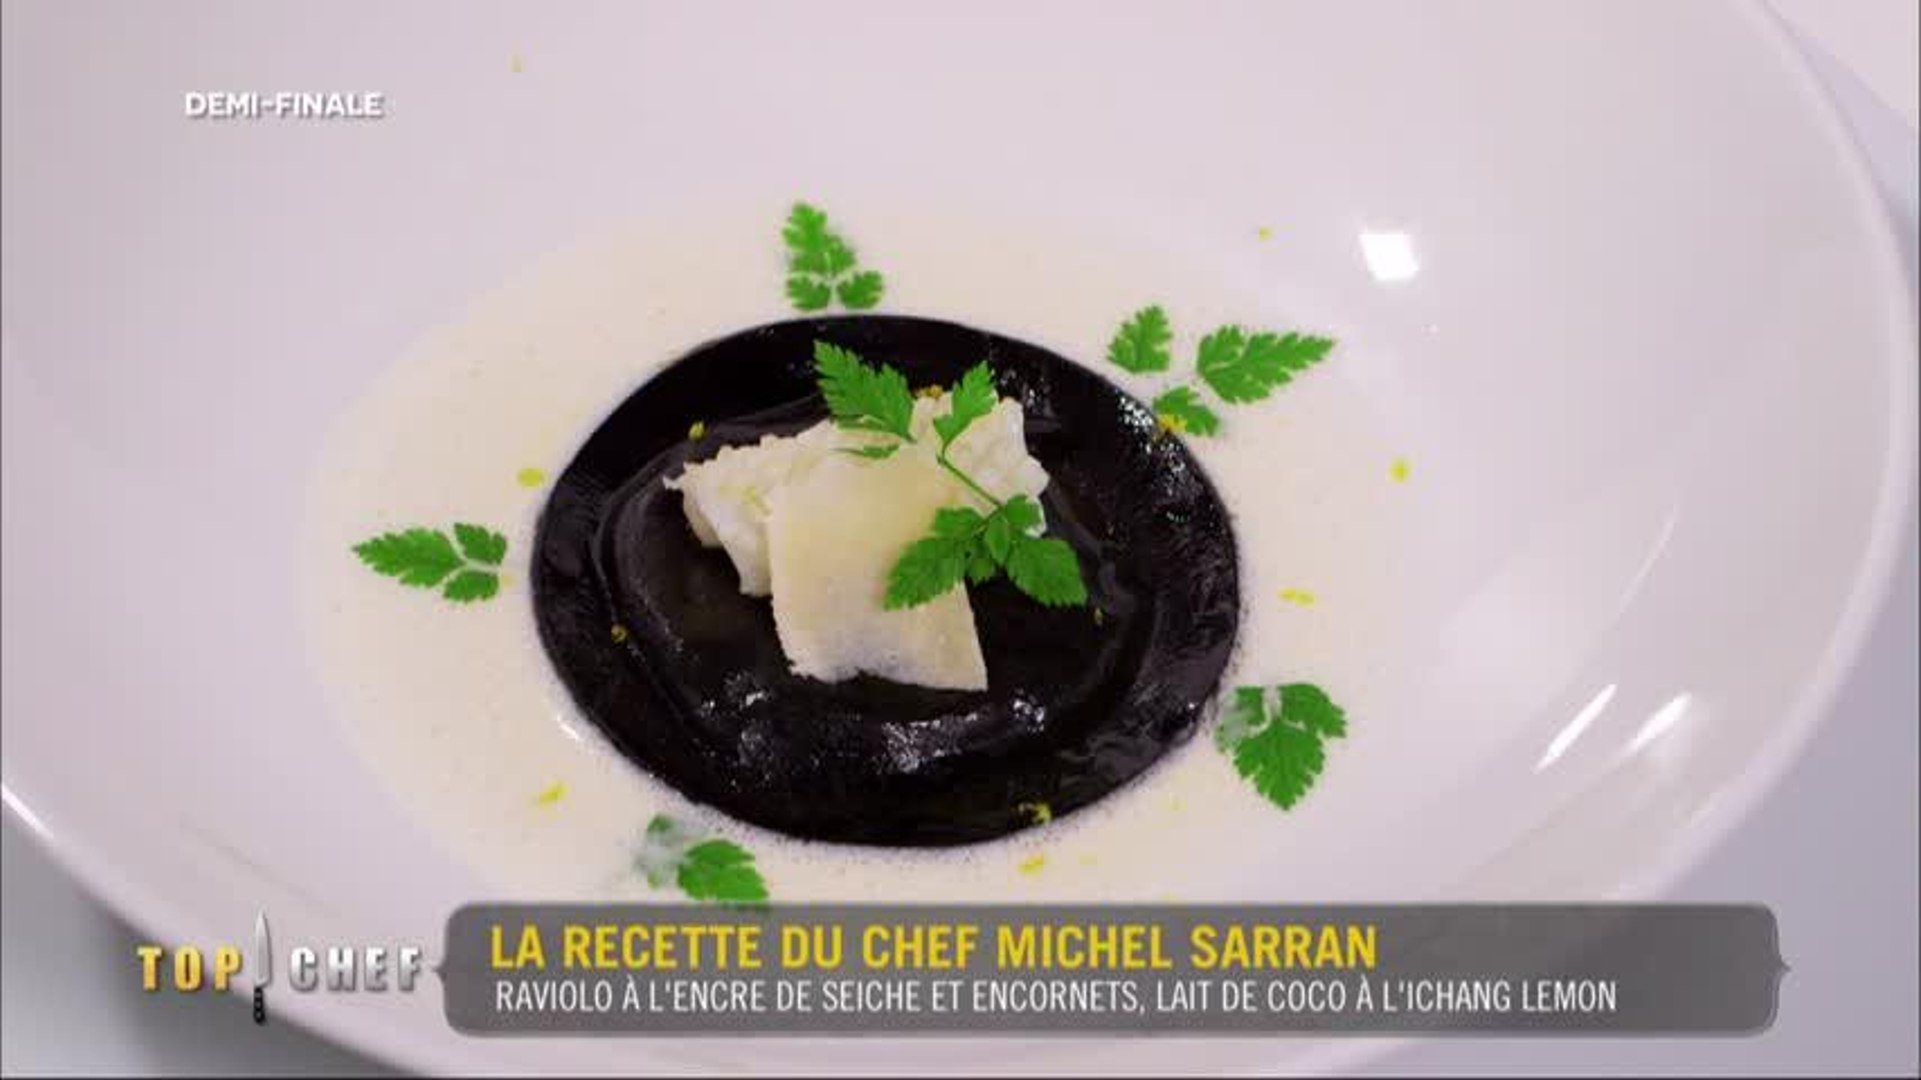 Raviolo à l'encre de seiche et encornets, lait de coco à l'ichang lemon de  Michel Sarran - Vidéo Dailymotion